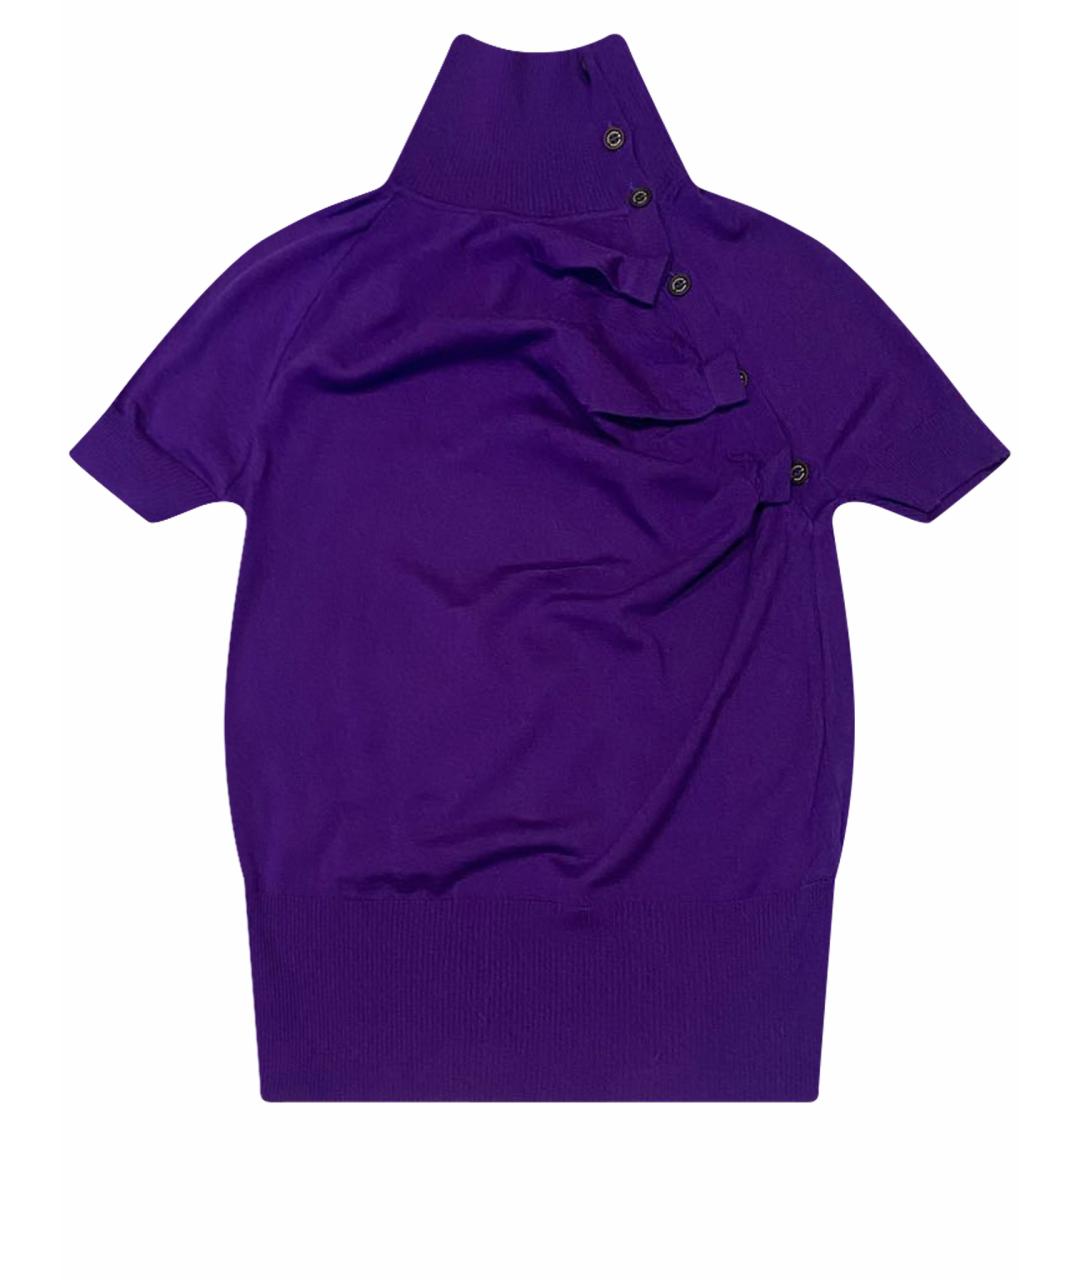 MCQ ALEXANDER MCQUEEN Фиолетовый шерстяной джемпер / свитер, фото 1